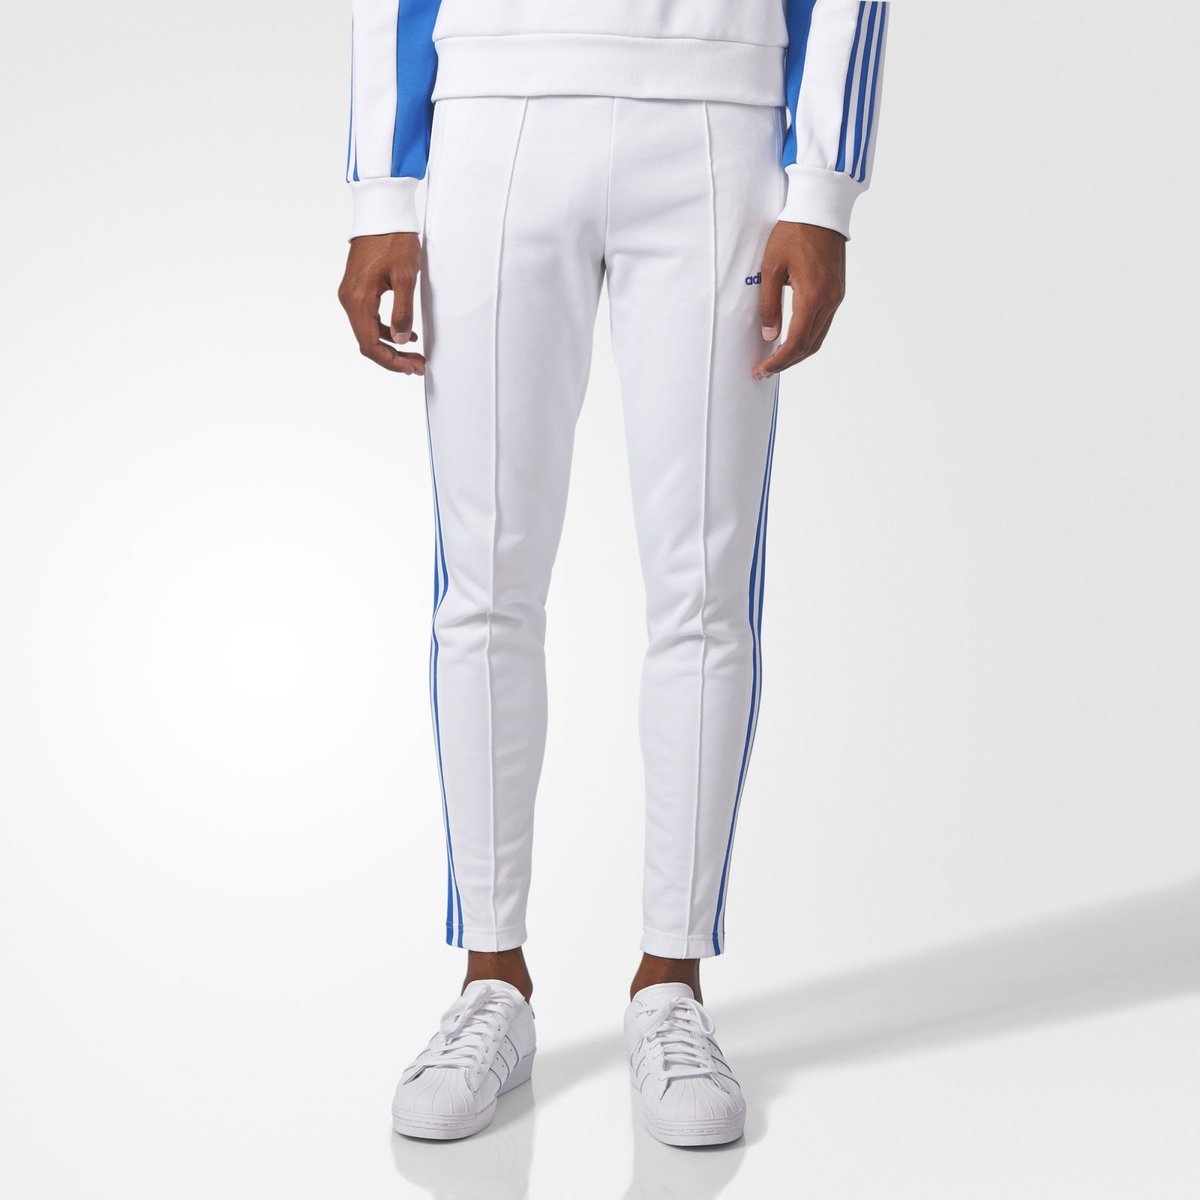 Adidas Beckenbauer штаны белые